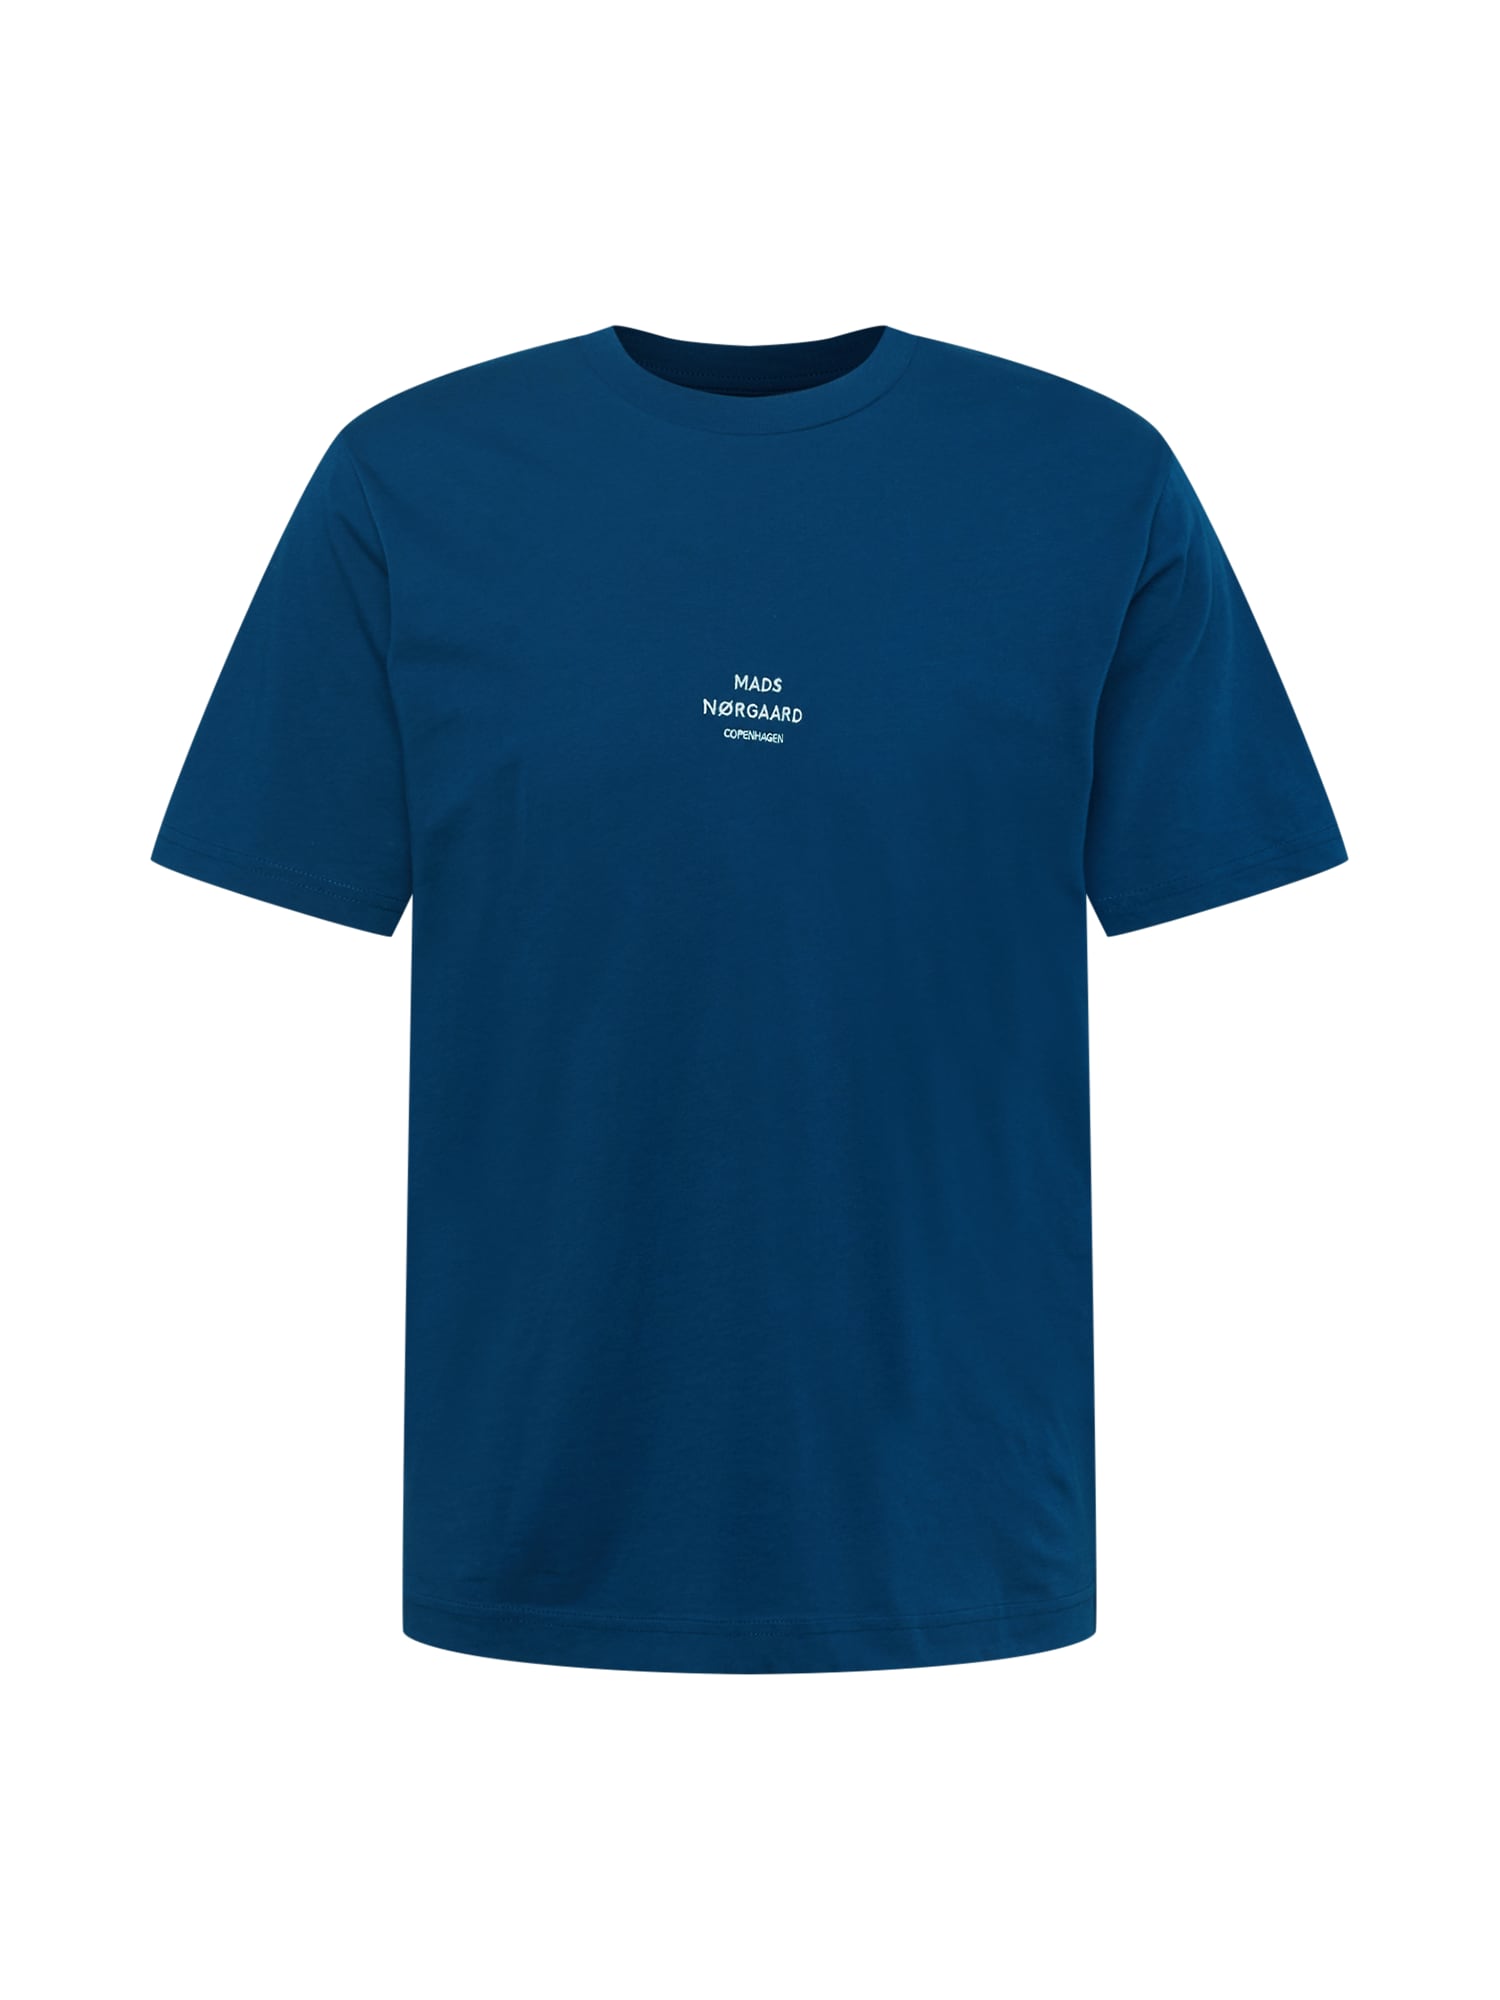 Мъже > Дрехи > Тениски > Тениски с къси ръкави MADS NORGAARD COPENHAGEN Тениска  синя тинтява / бяло